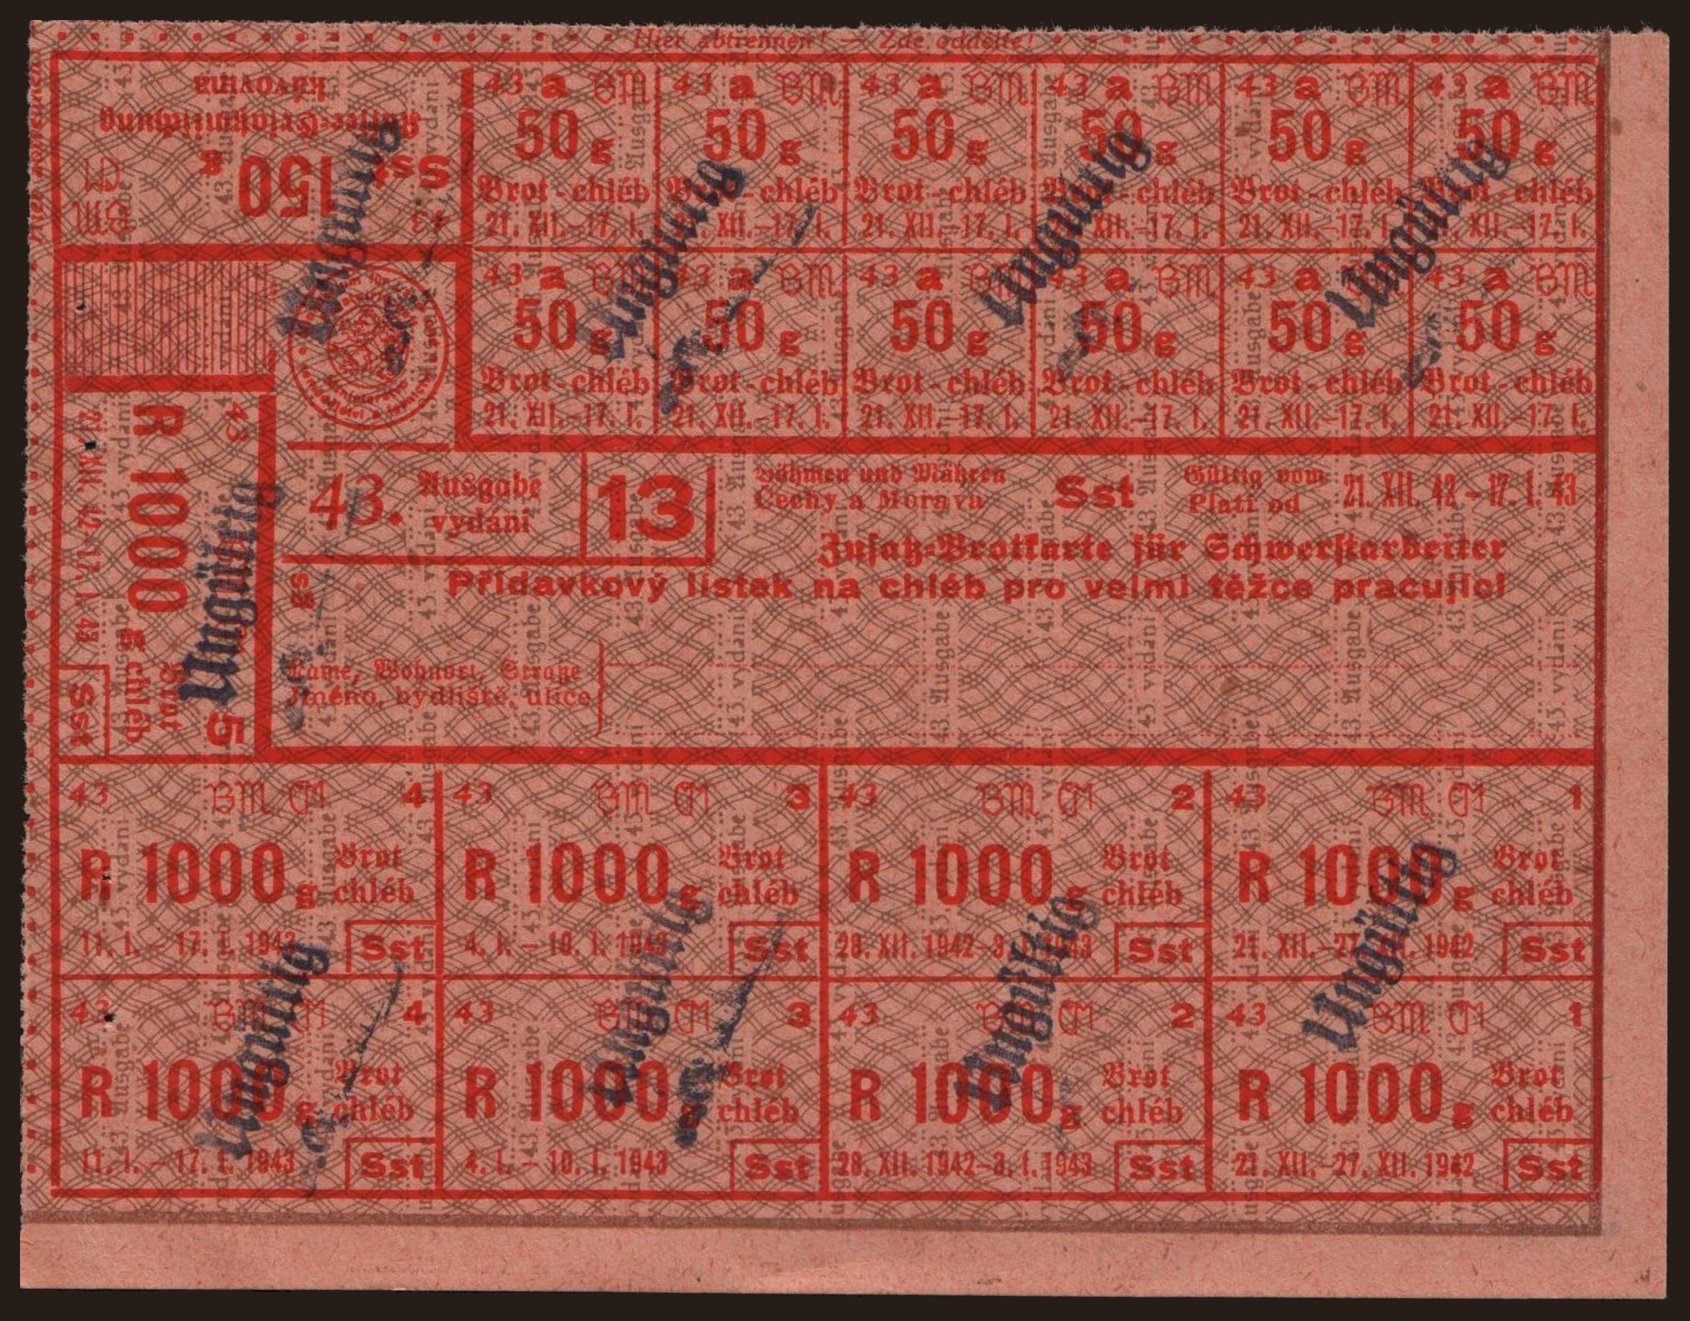 Zusatz-Brotkarte für Schwerstarbeiter - Přídavkový lístek na chléb pro velmi těžce pracujíci, 1942